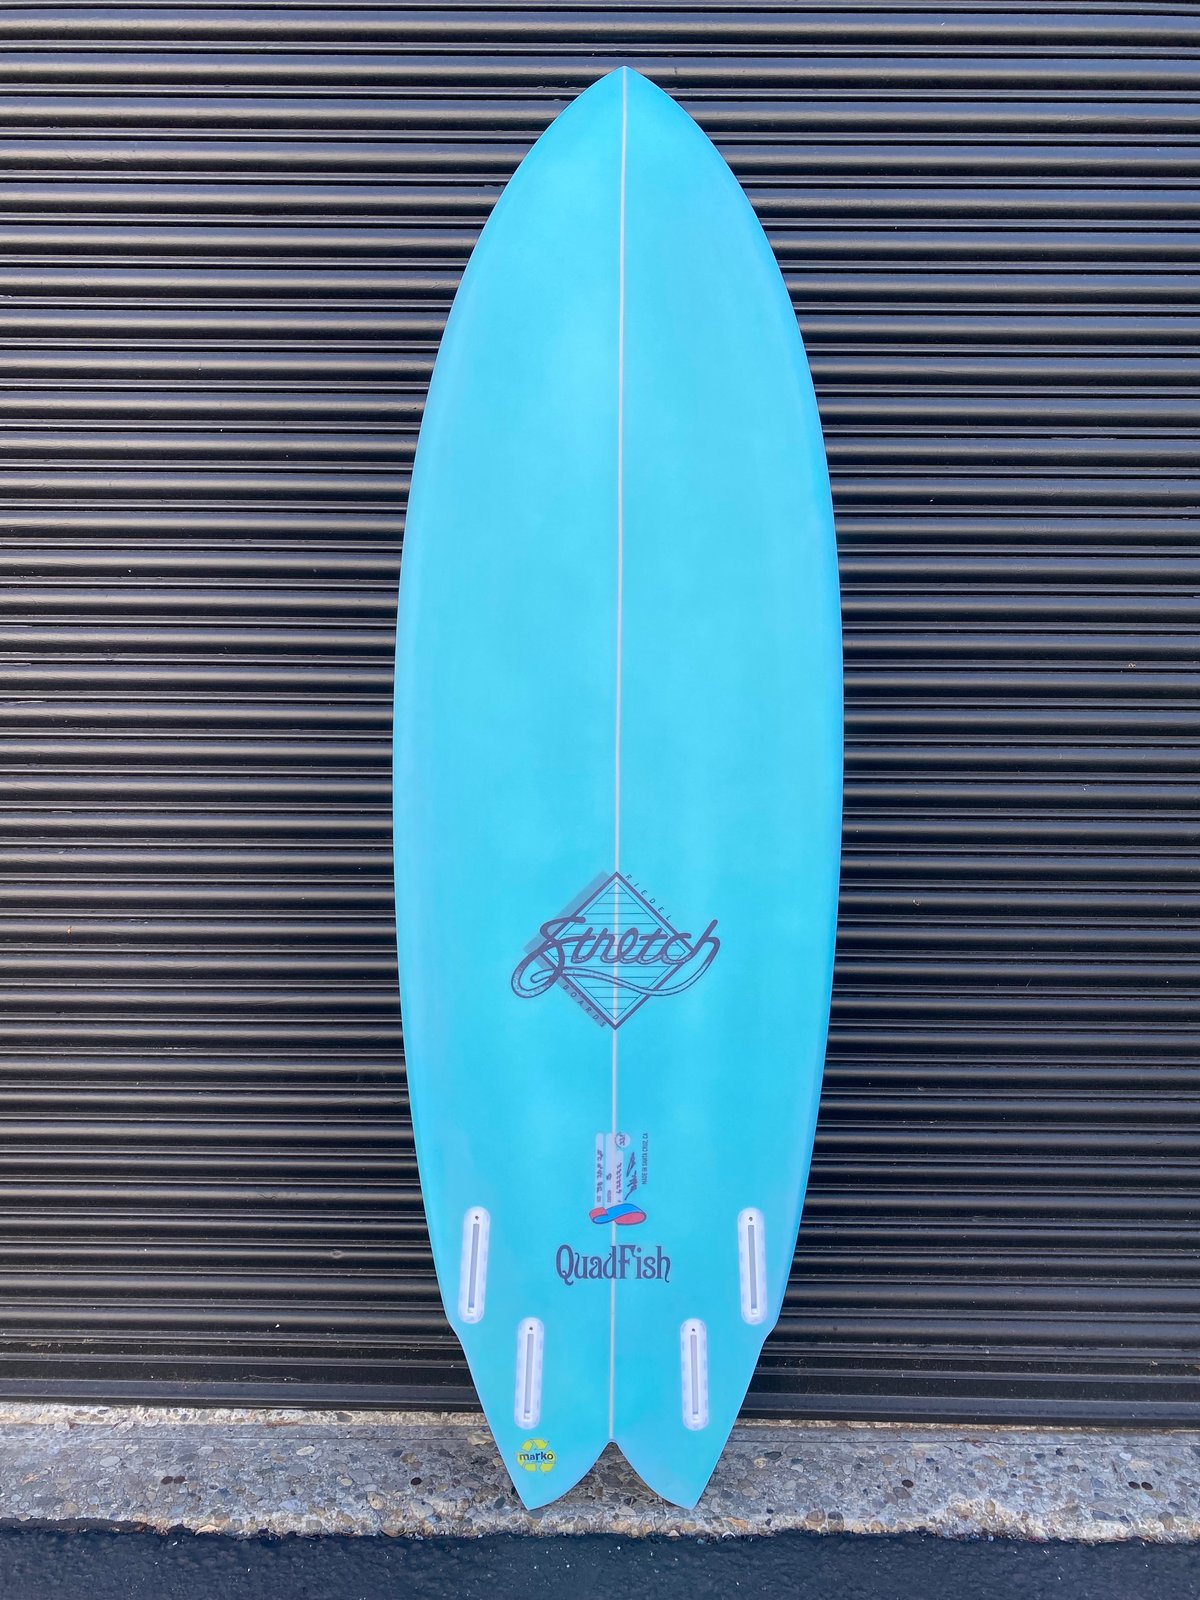 サーフボード Varley surf bord - マリンスポーツ